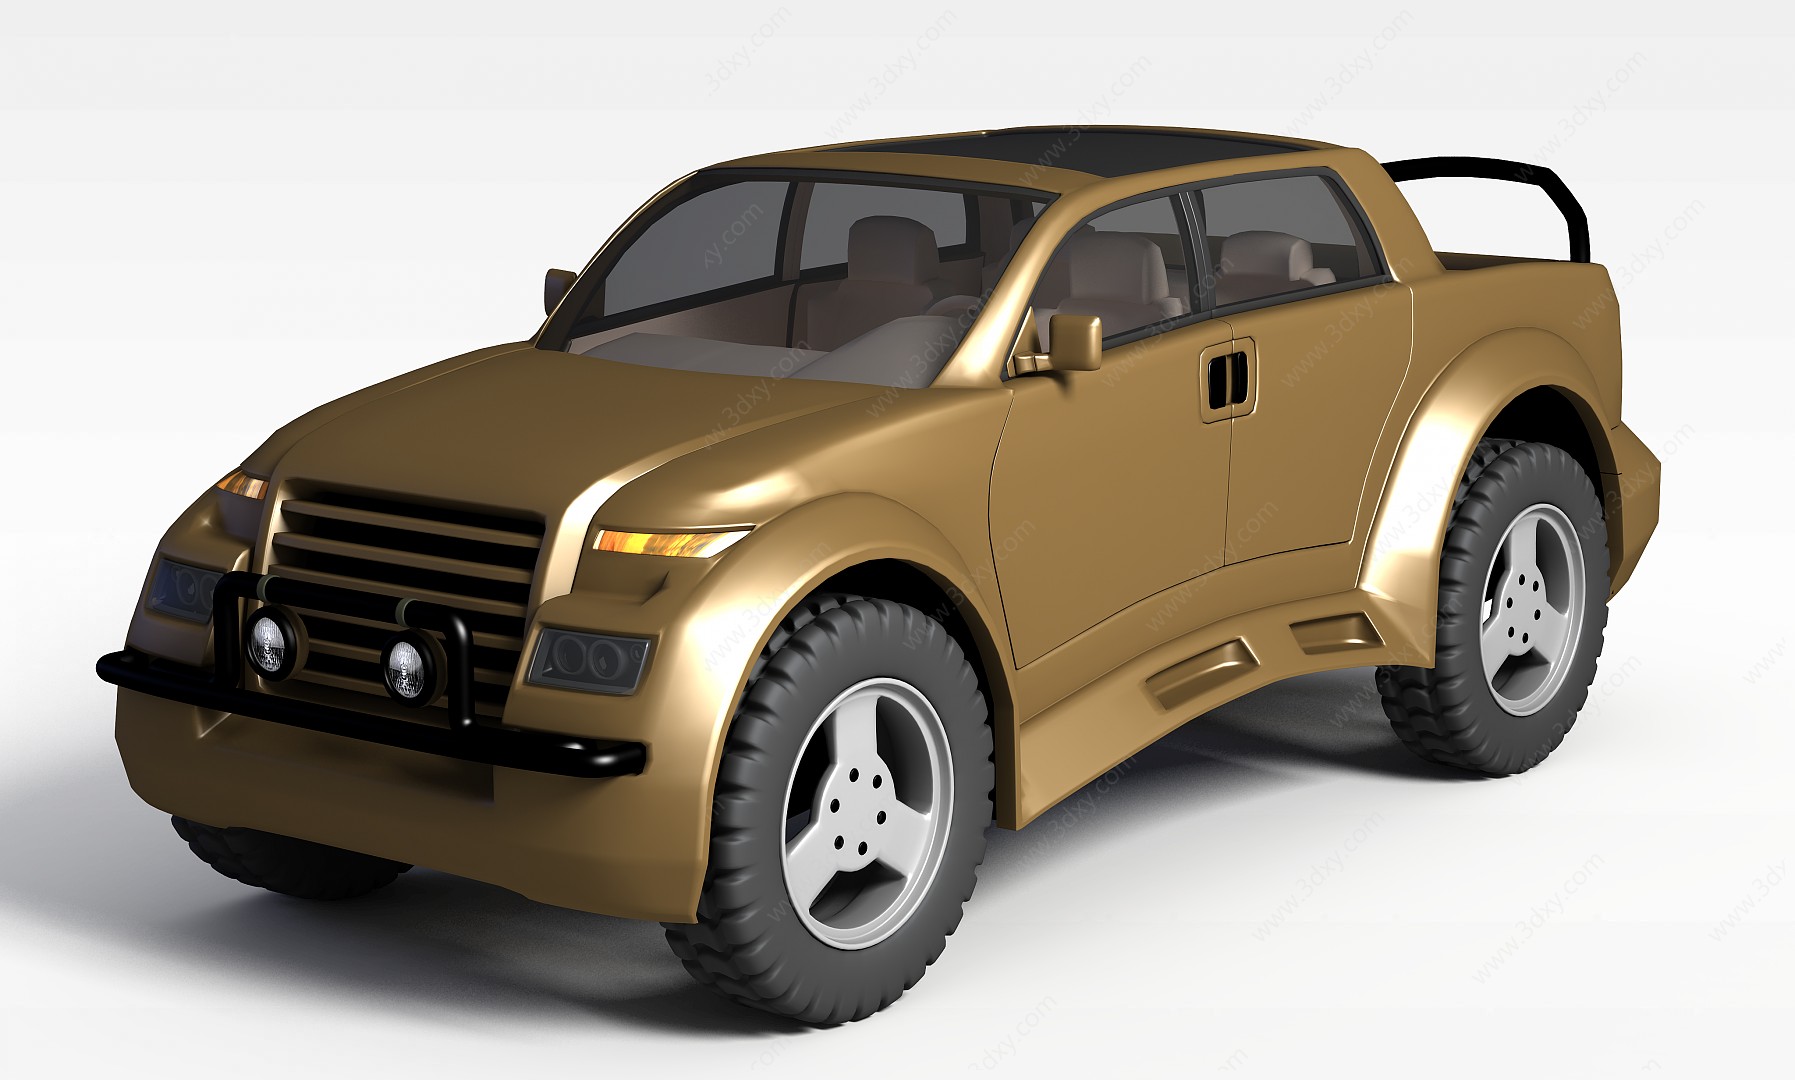 皮卡车3D模型